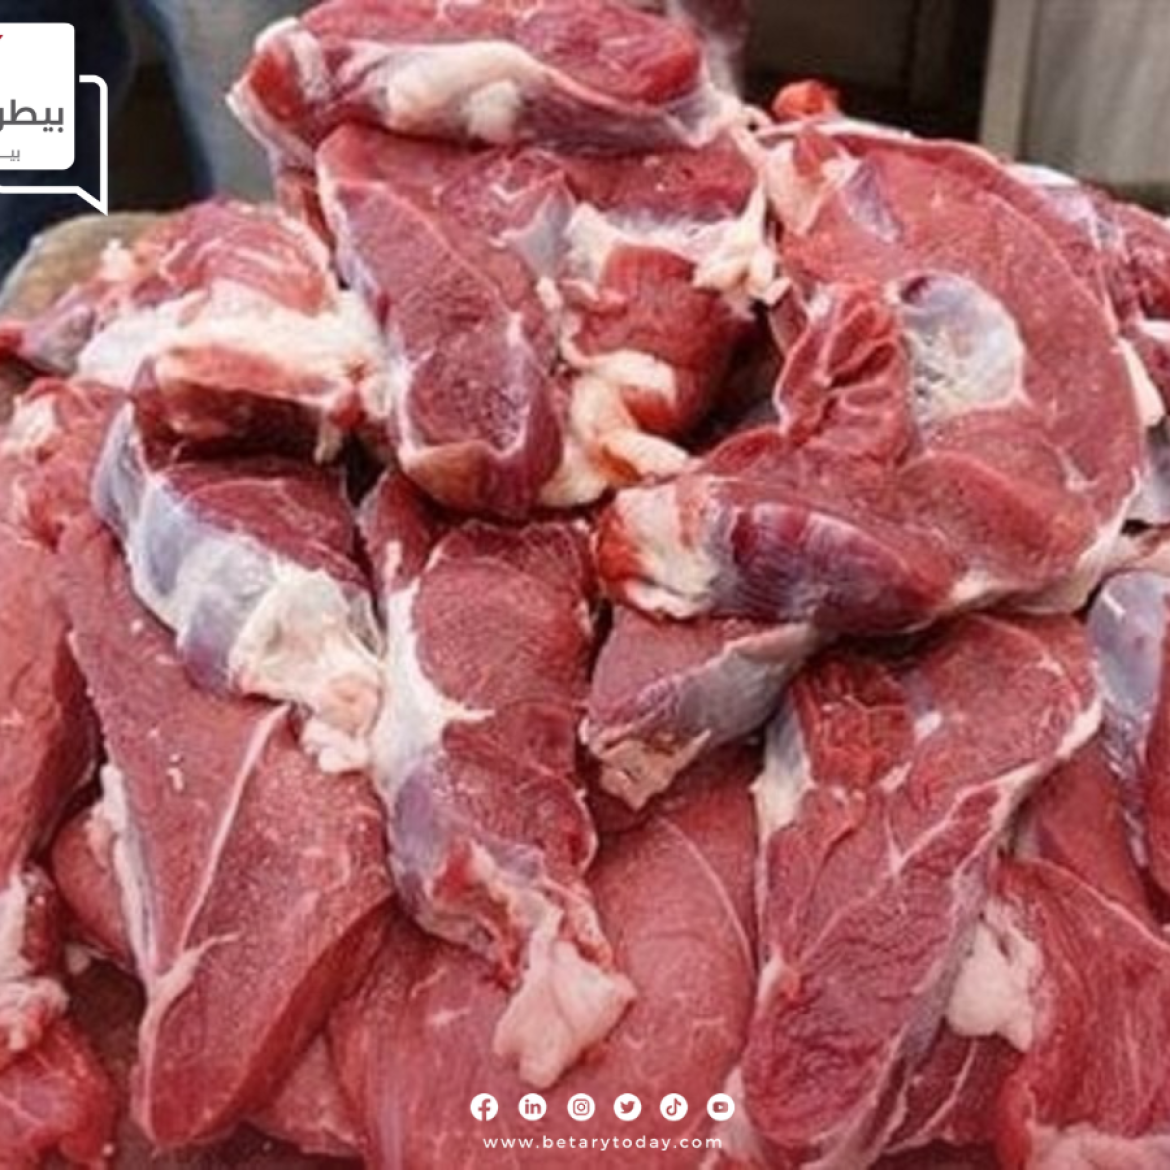 في شم النسيم... تعرف على أسعار اللحوم الحمراء البلدي والمستوردة اليوم